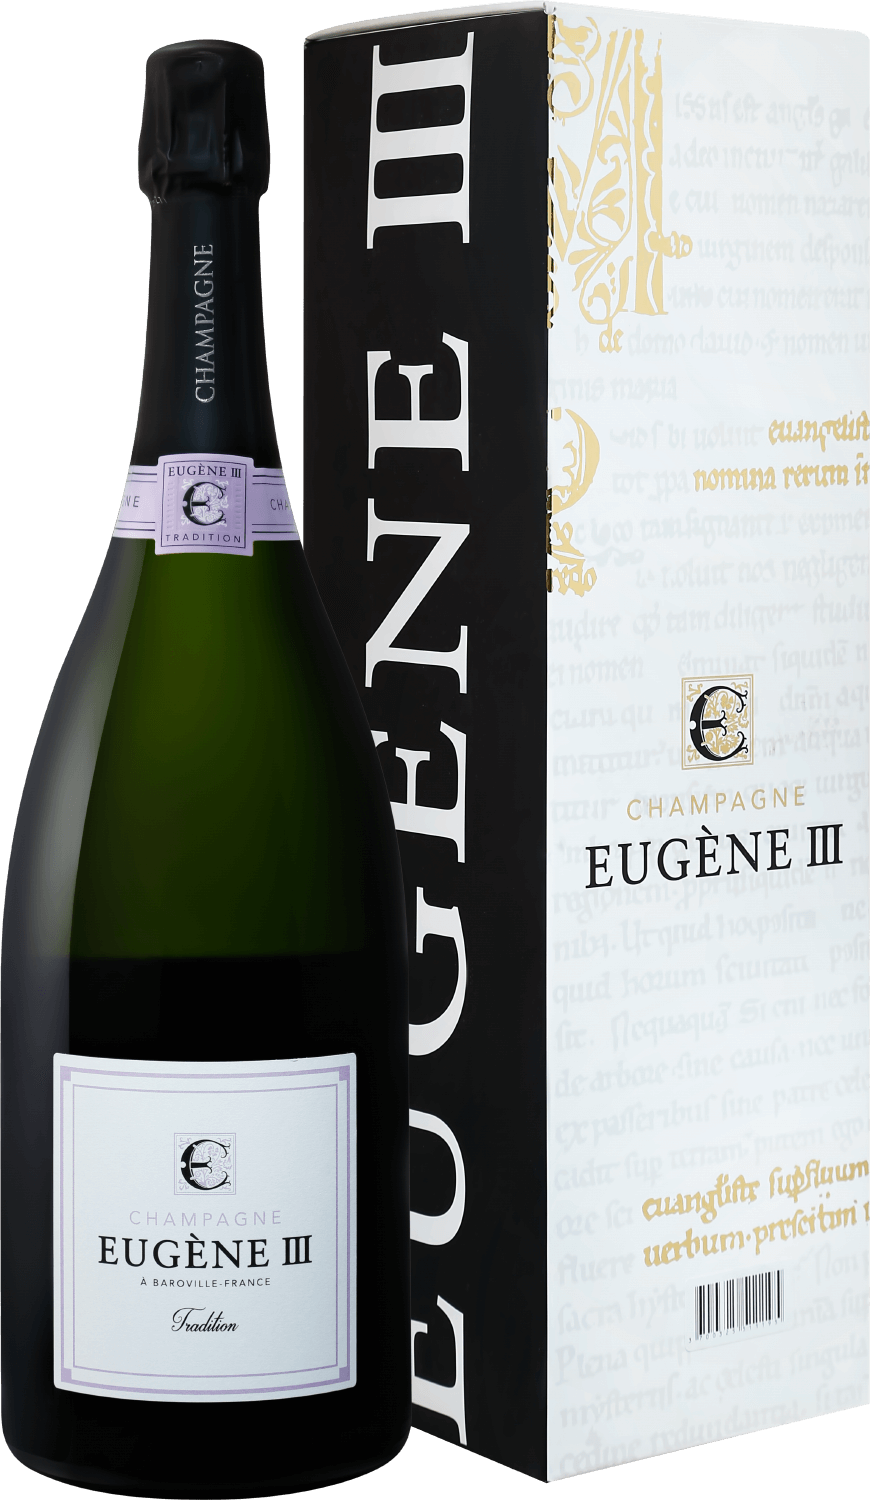 Eugene III Tradition Brut Champagne АOC Coopérative Vinicole de la Région de Baroville (gift box) barfontarc blanc de blancs brut champagne аoc coopérative vinicole de la région de baroville